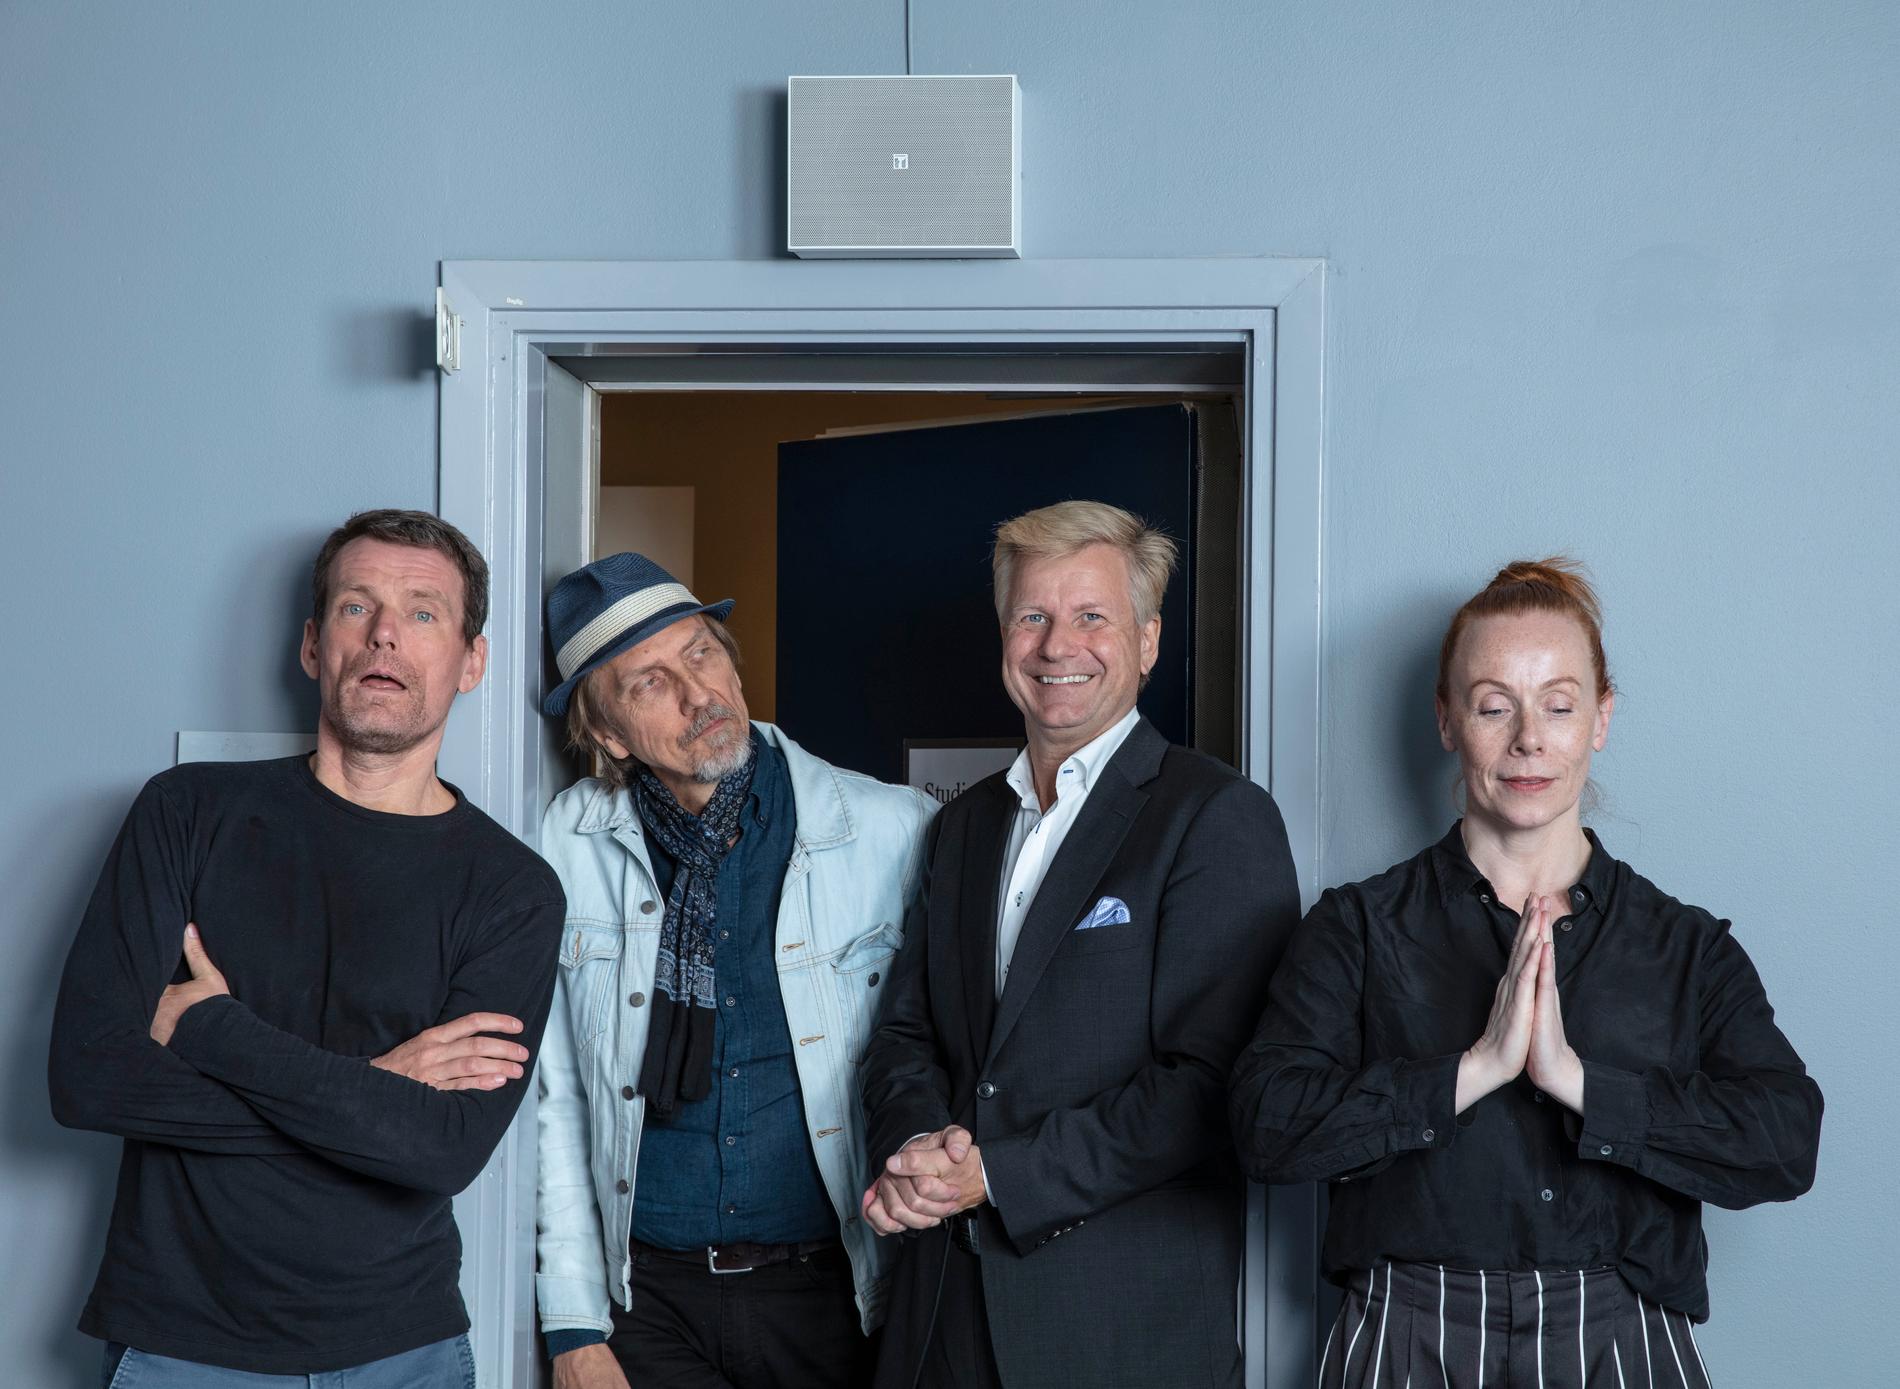 Mattias Konnebäck, Erik Blix, Göran Gabrielsson och Rachel Mohlin utgör satirgruppen Public Service som gör satir i programmet "Public service" i P1. Pressbild.